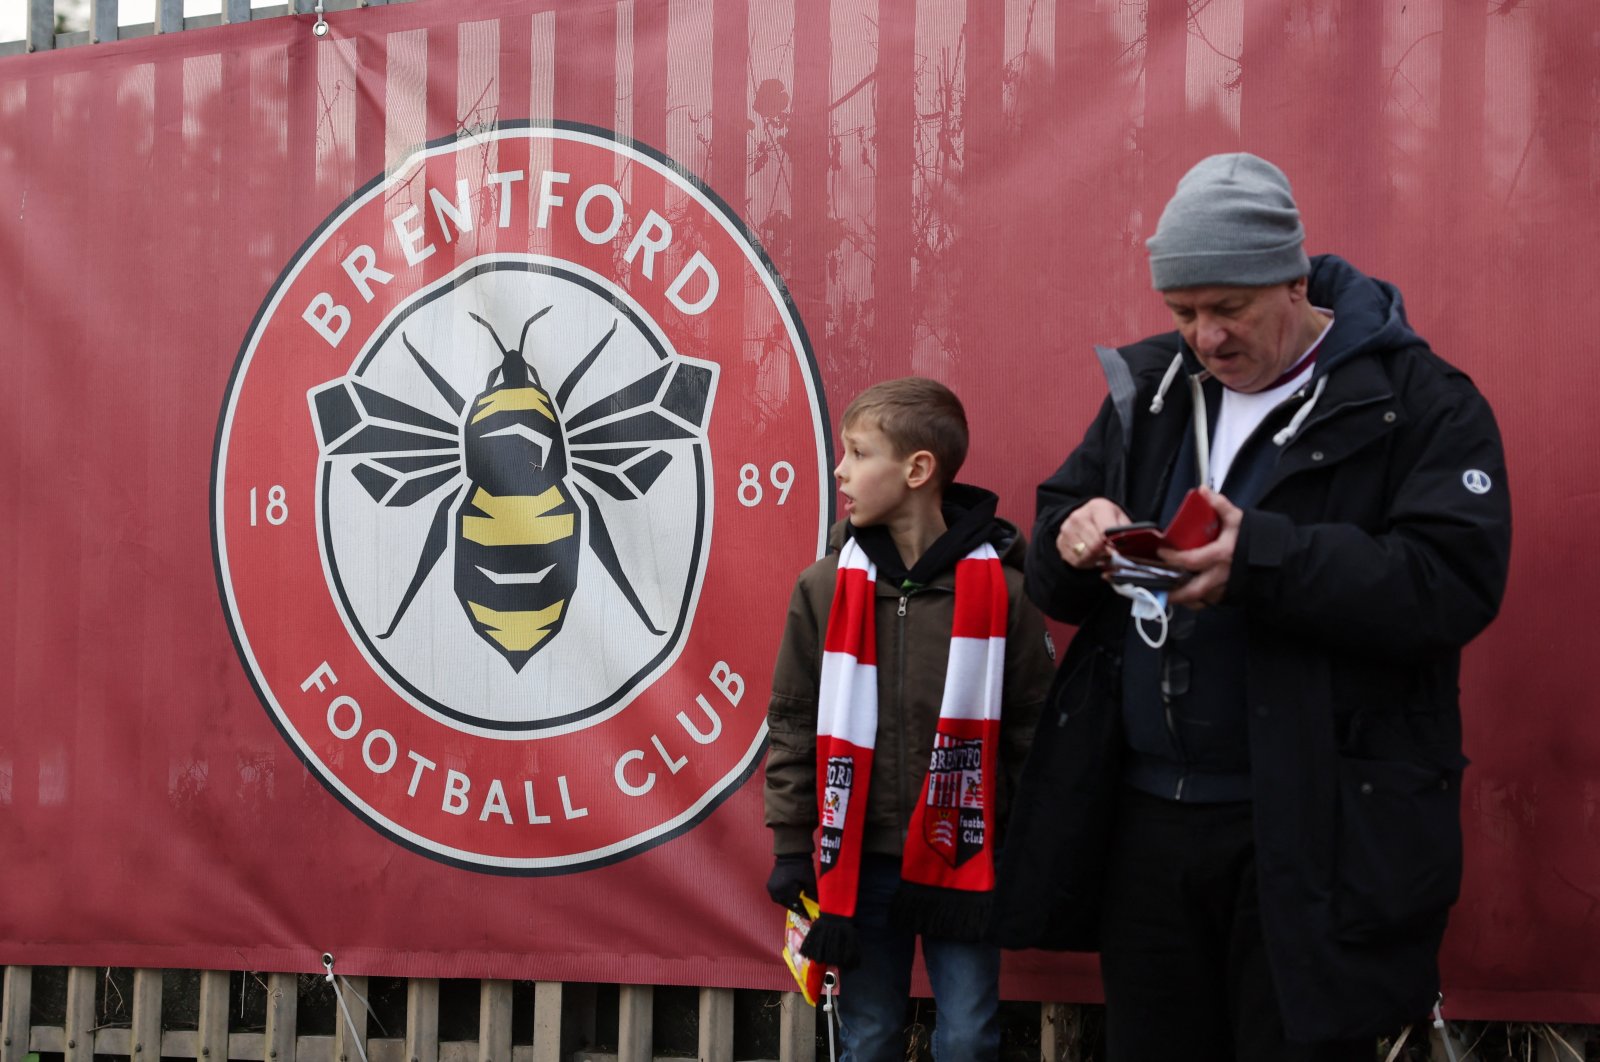 Brentford fans outside the stadium before a Premier League match against Aston Villa, London, England, Jan. 2, 2022. (Reuters Photo)